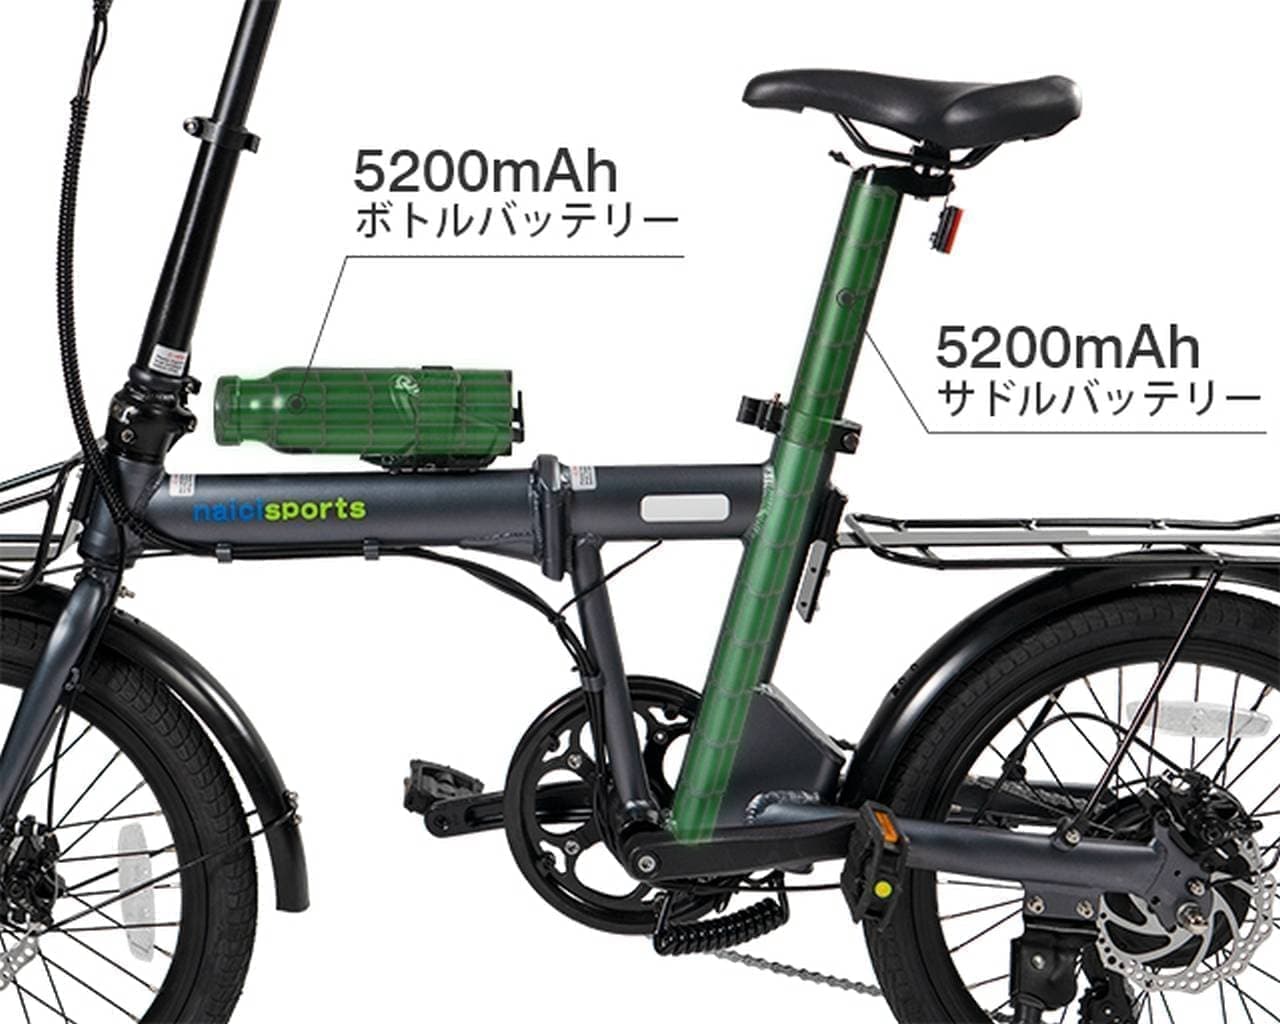 バッテリーはボトルとシートピラーに － 最長で100kmのアシストが可能な電動アシスト自転車「naicisports power 2.0」